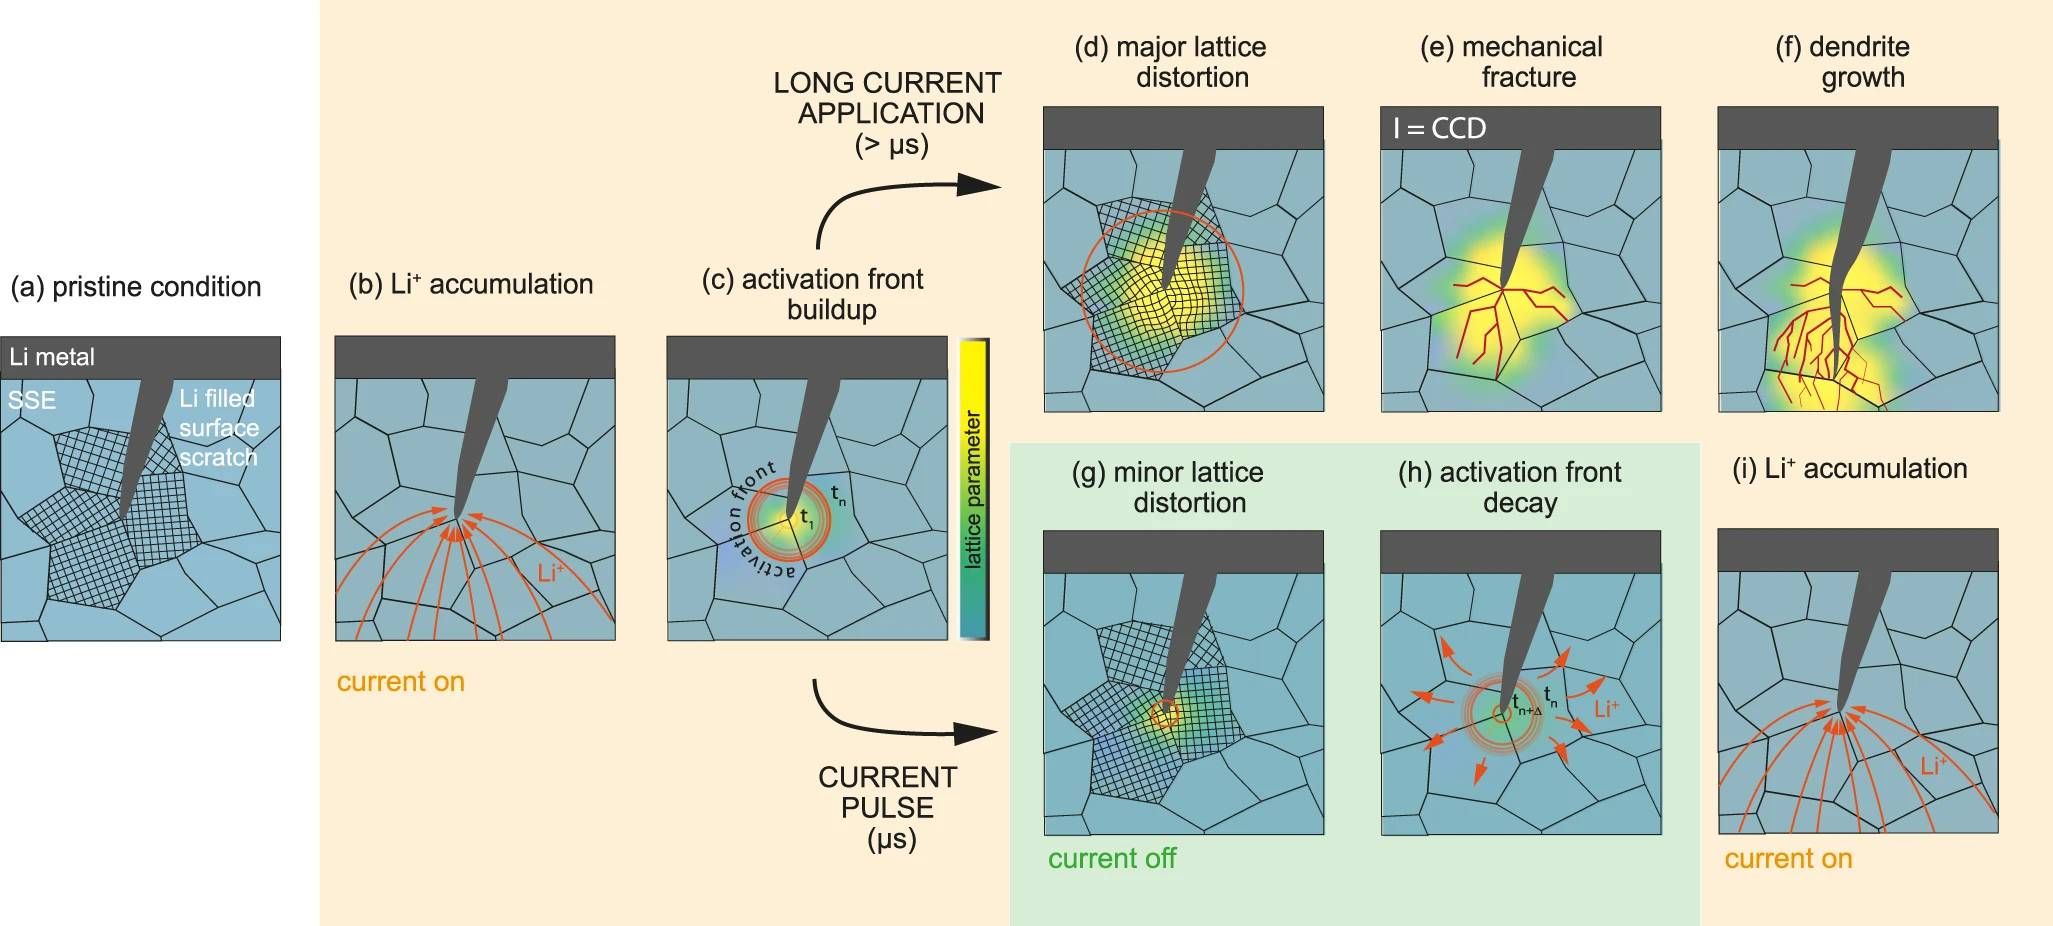 Uma ilustração de alguns mecanismos potenciais para menor desgaste do carregamento por corrente pulsada nas células da bateria